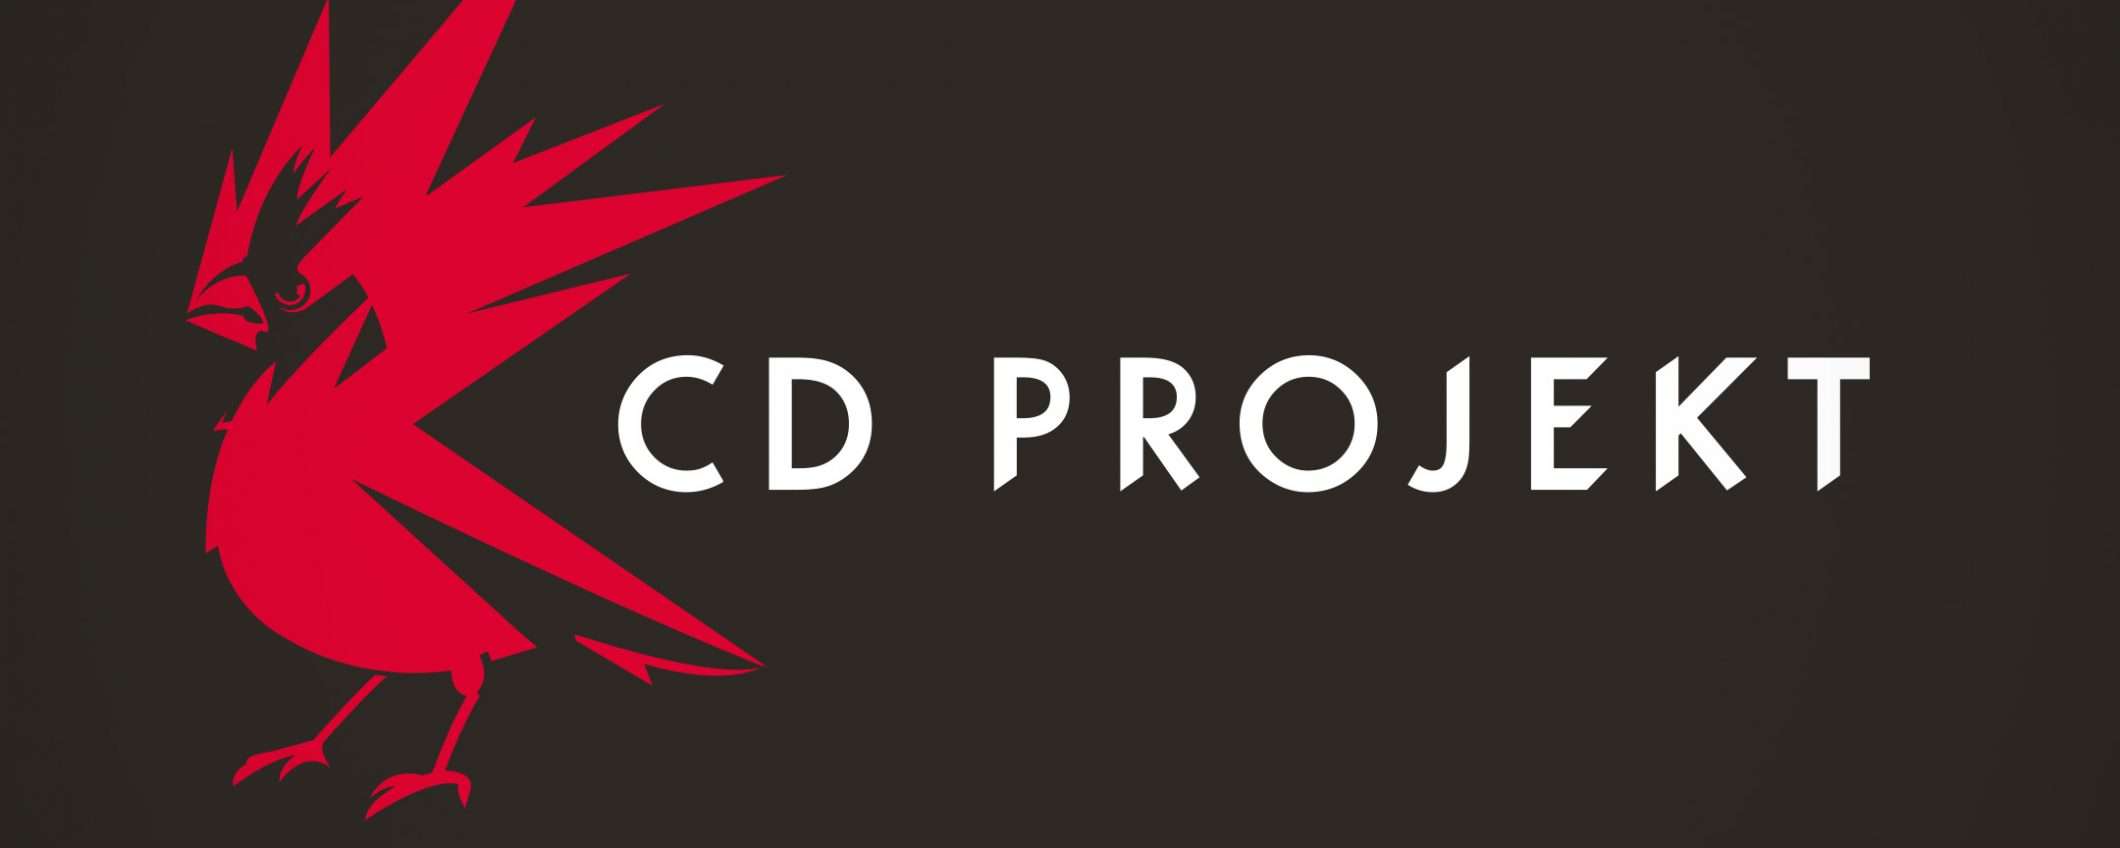 CD Projekt conferma: i dati rubati sono online